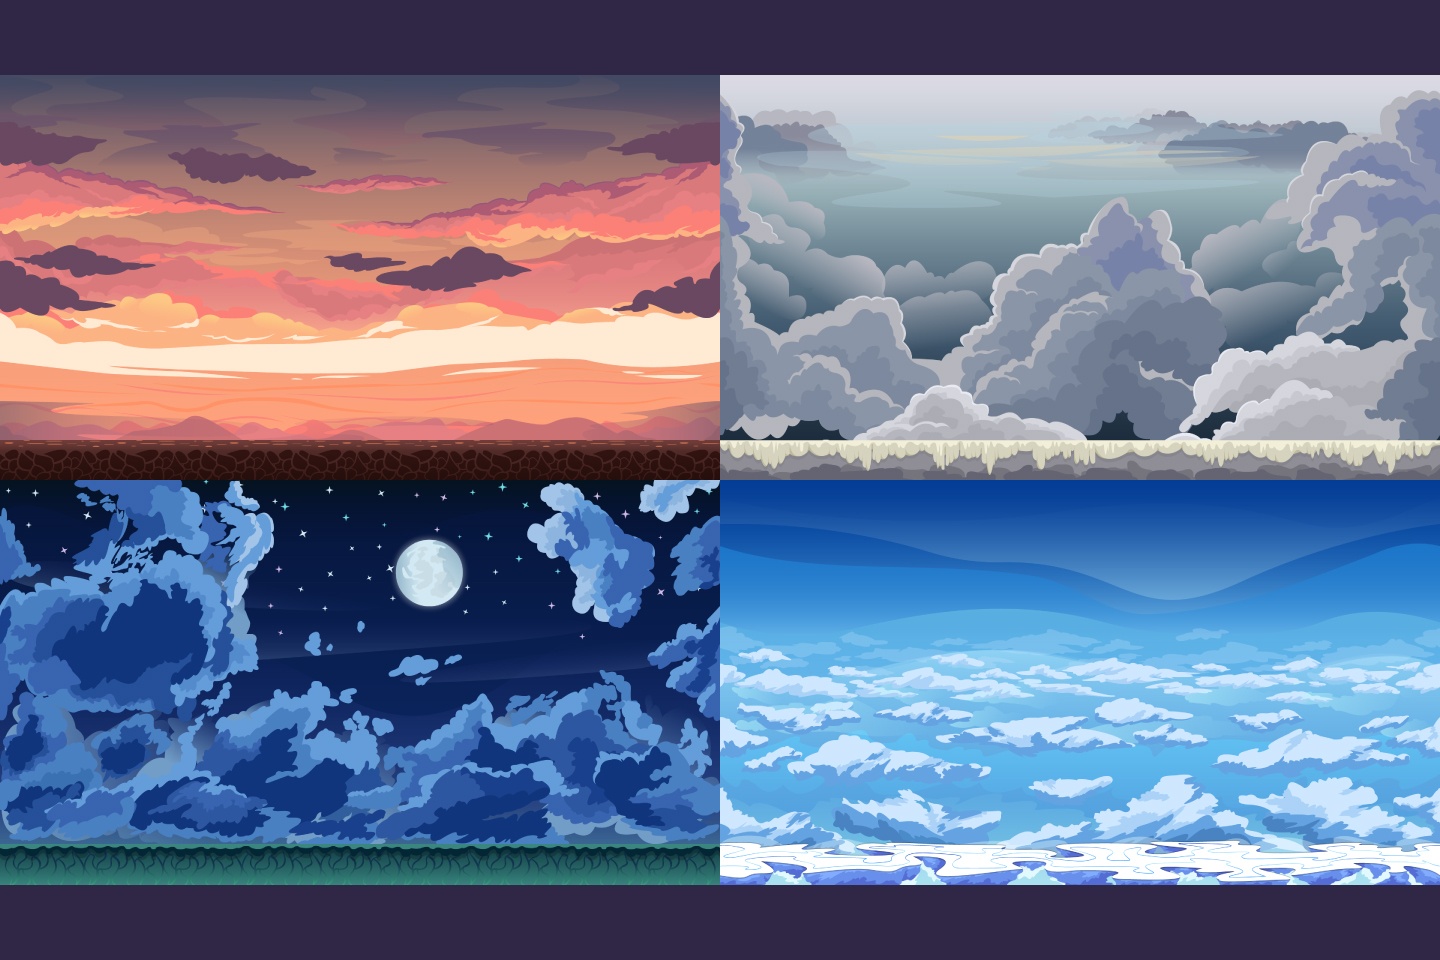 Sky 2D Game Backgrounds mang đến cho bạn không gian vô cùng sống động và đẹp mắt. Nếu yêu thích trò chơi thì đừng bỏ lỡ cơ hội thưởng thức.